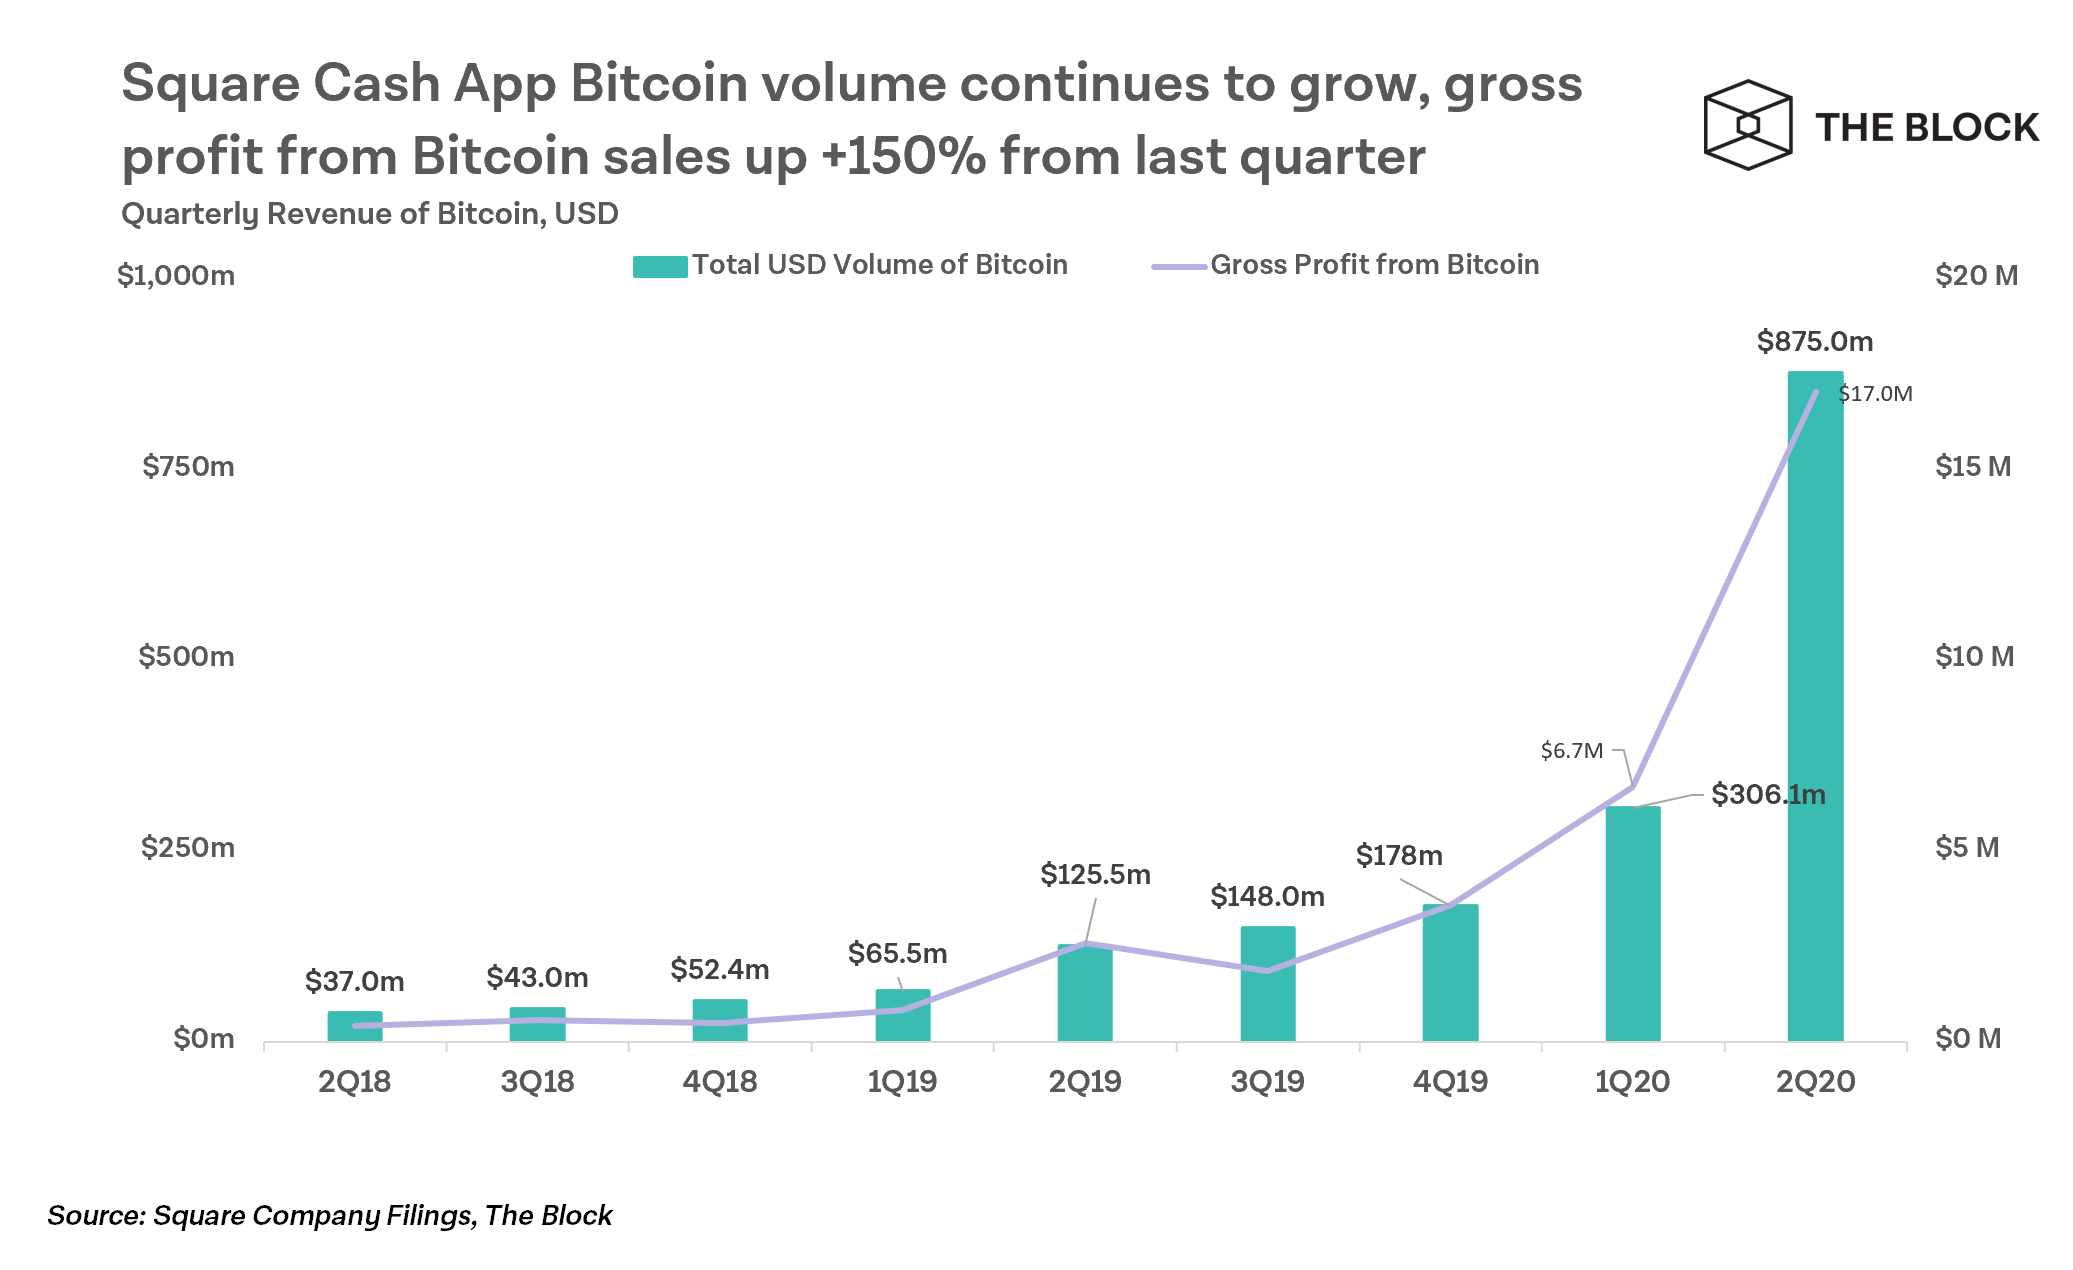 Продажи биткоинов через приложение Square Cash App продолжают расти